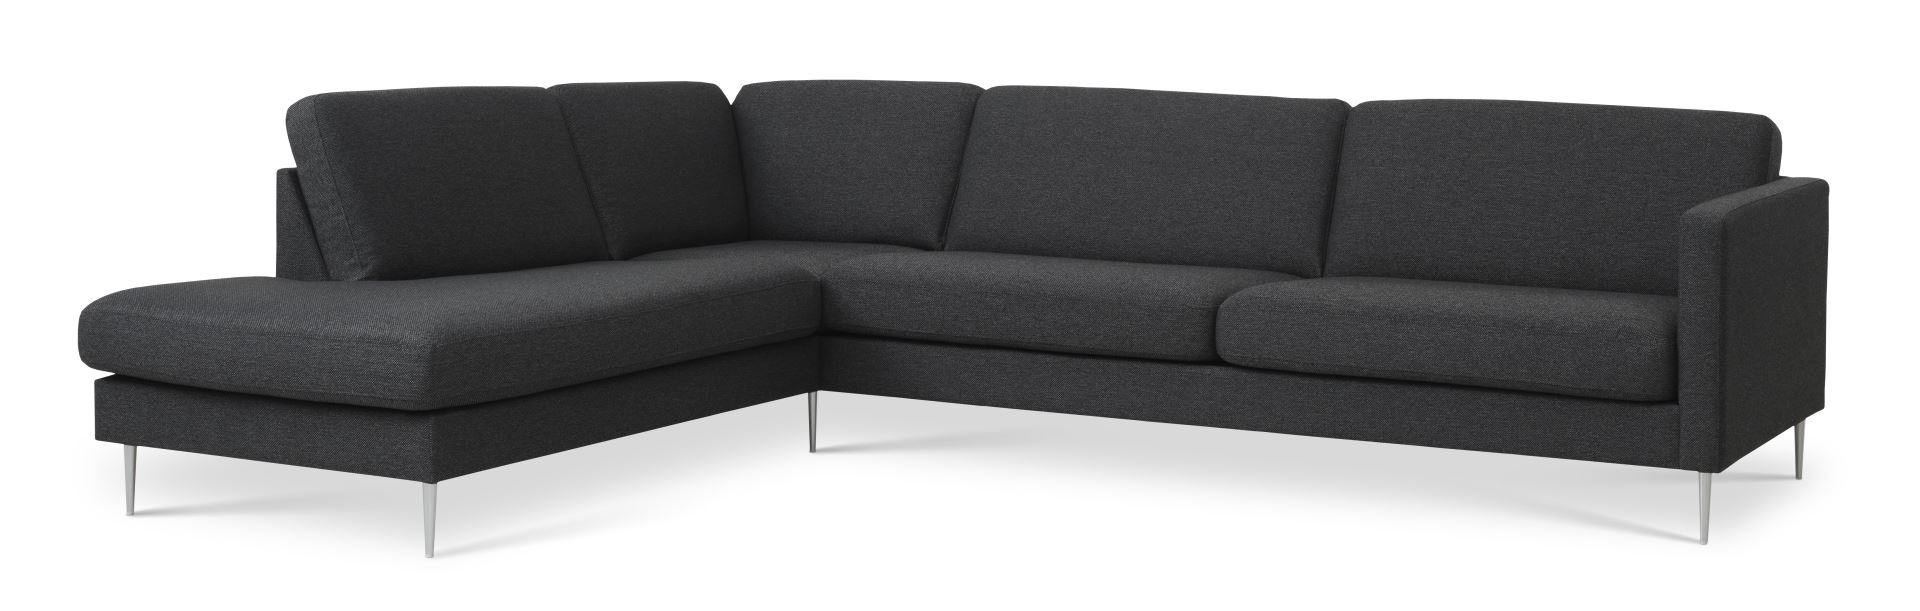 Ask sæt 60 stor OE sofa, m. venstre chaiselong - antracitgrå polyester stof og børstet aluminium